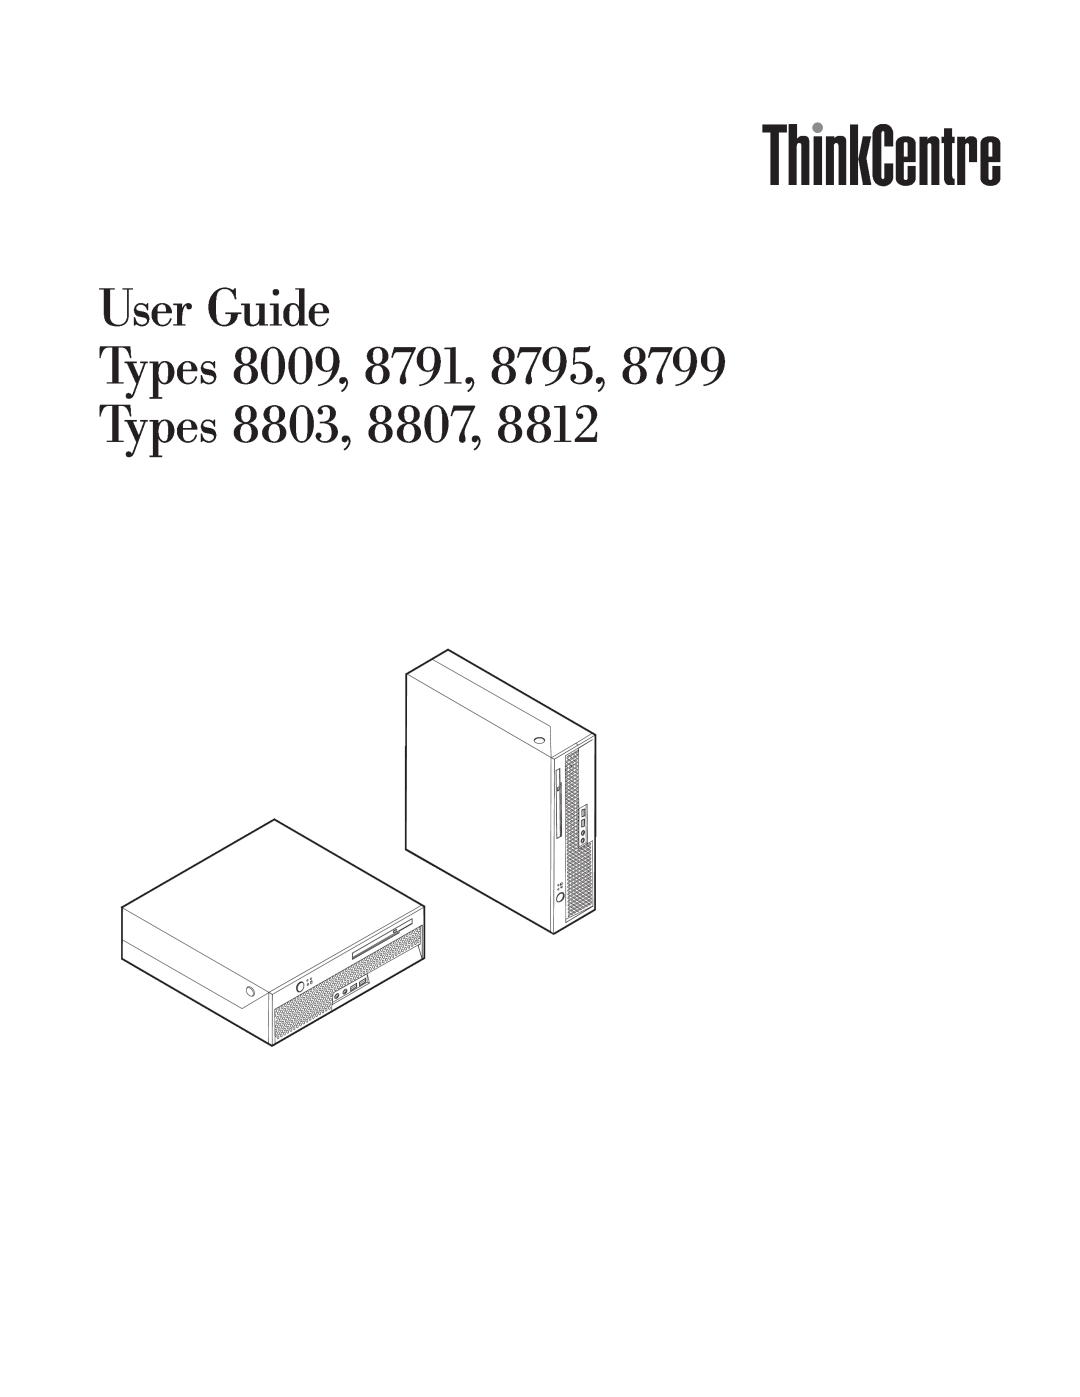 Lenovo 8795, 8791, 8807, 8803, 8799, 8812 manual User Guide Types 8009 